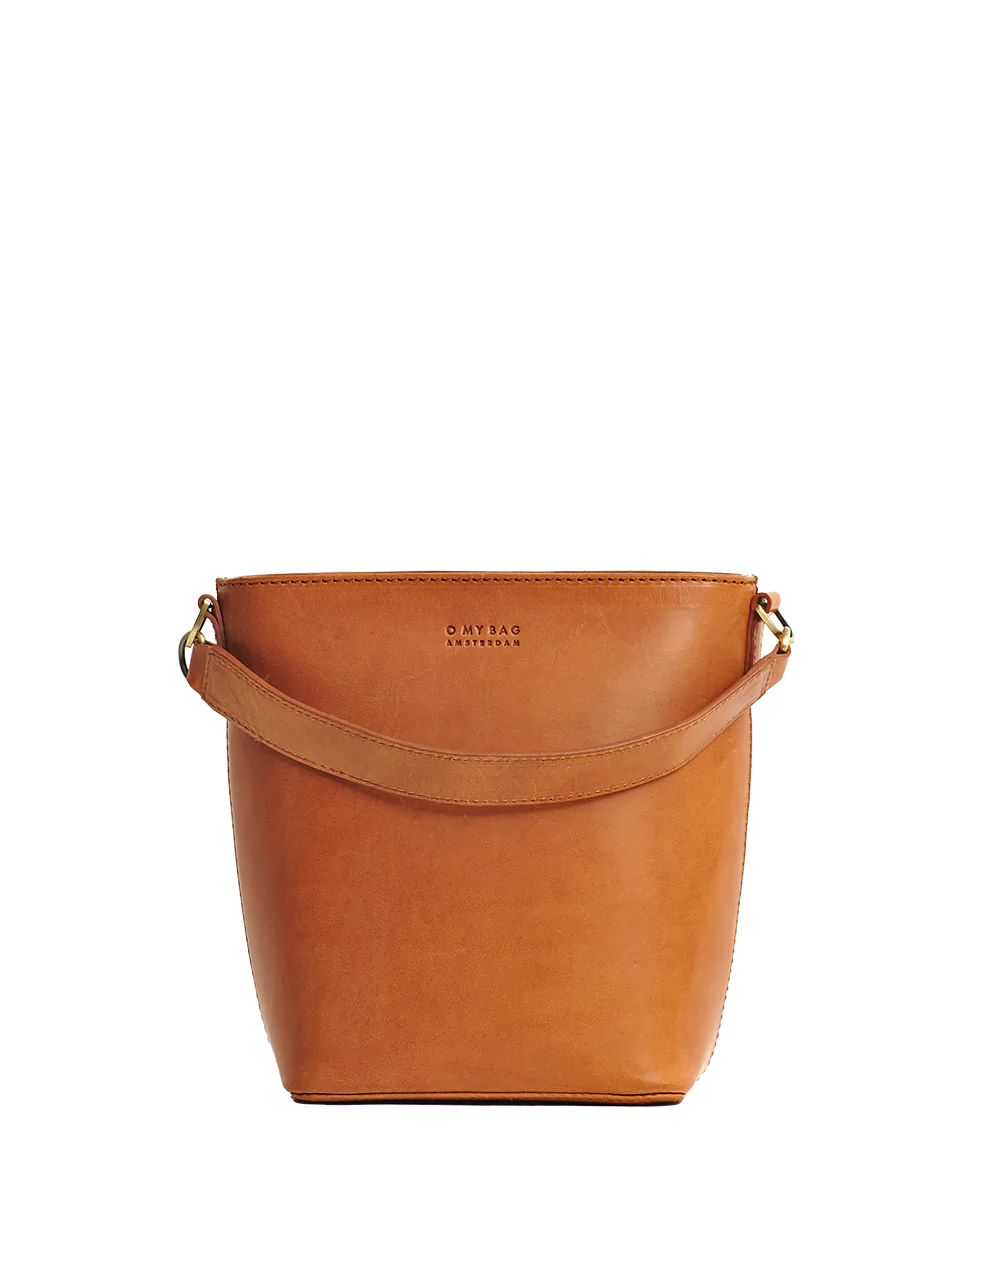 Leather Bucket Bag Cognac Brown